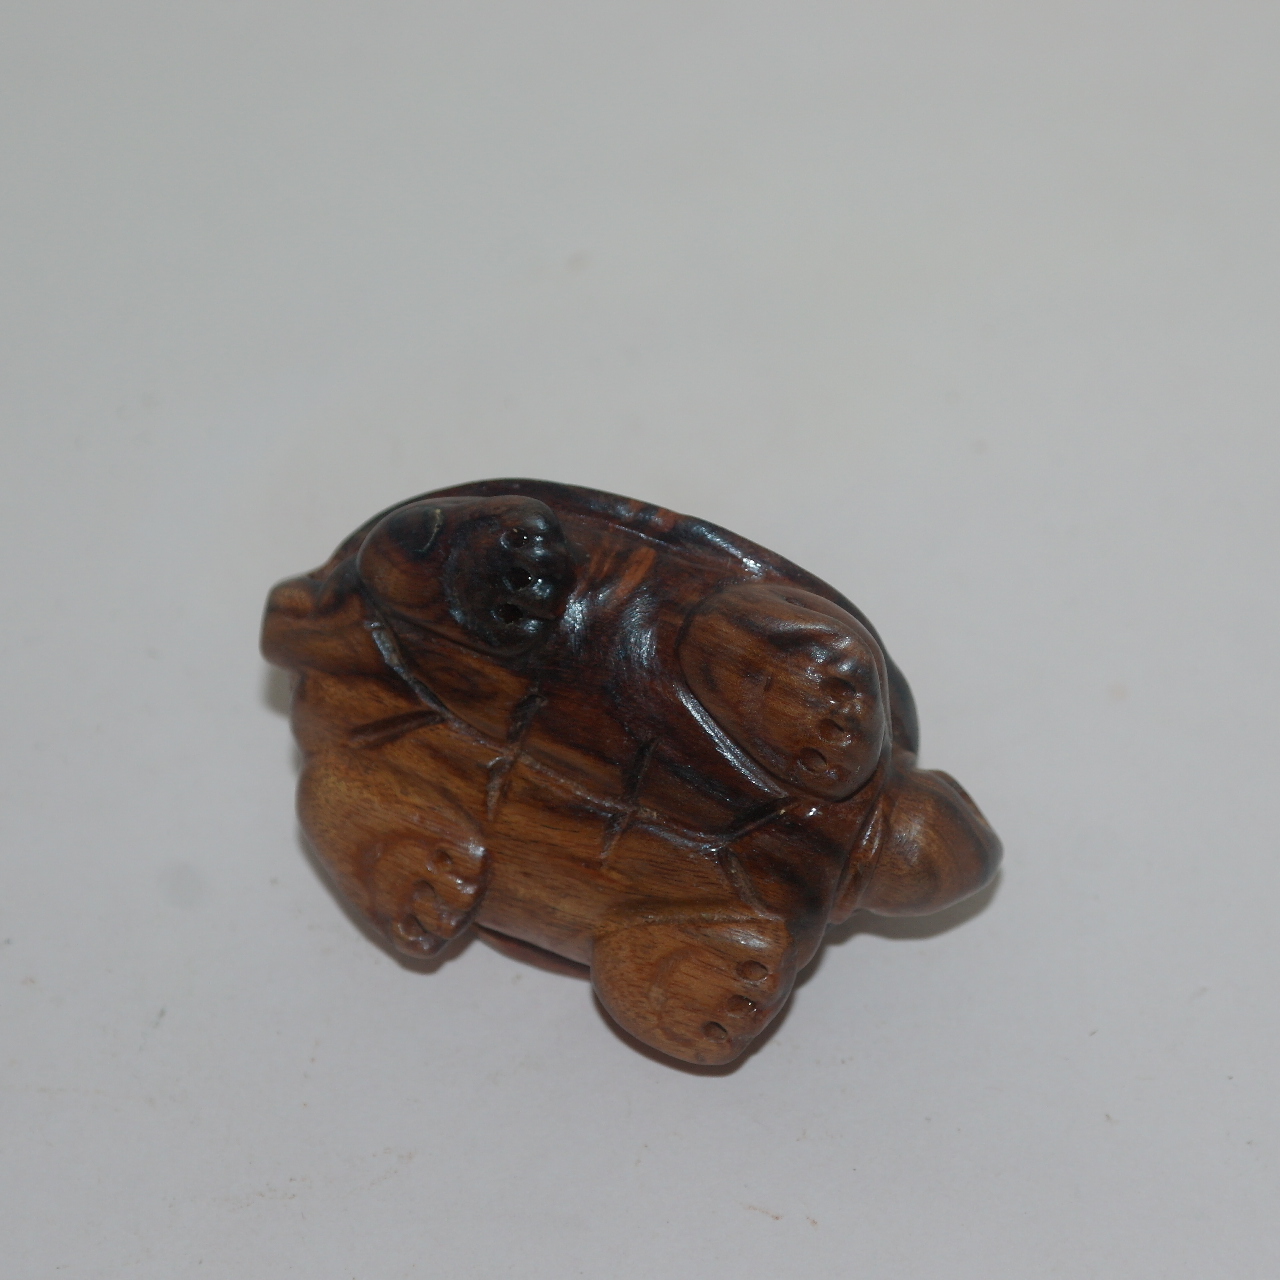 원목나무에 조각된 거북이 조각상